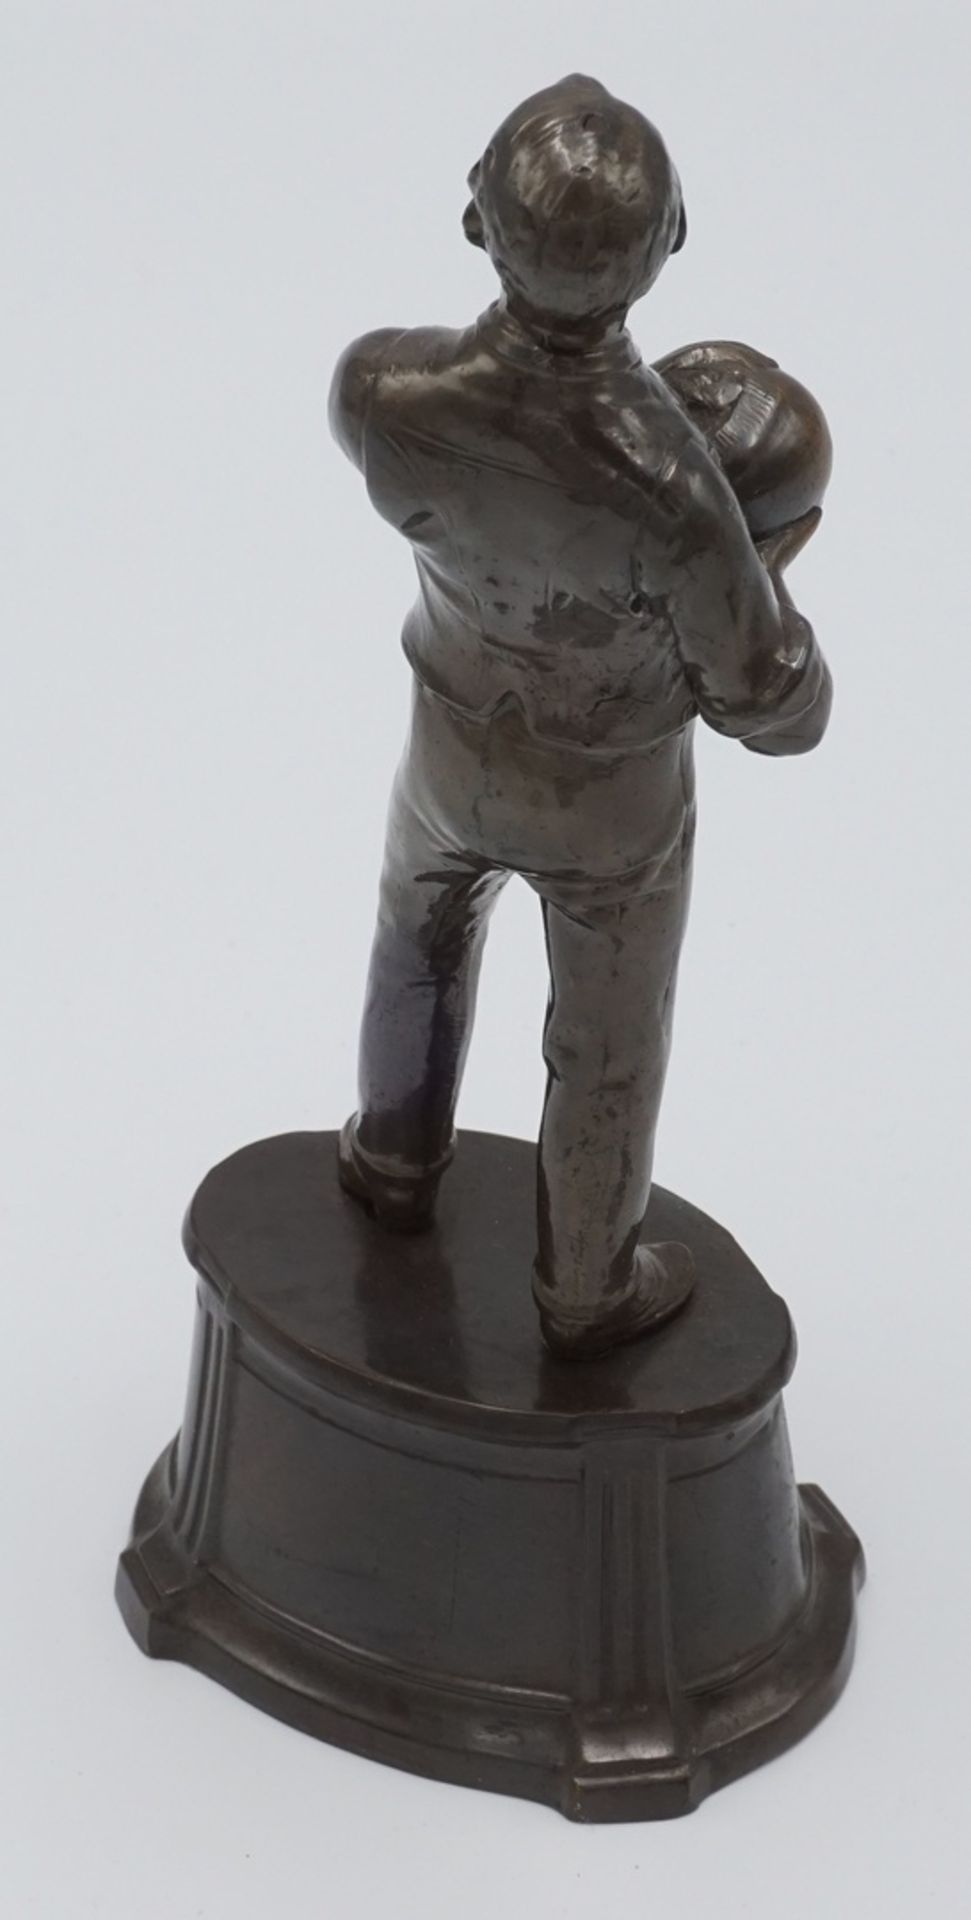 KegelspielerZinkspritzguss bronziert, um 1900, Kegelspieler steht auf einem hohen Sockel, - Bild 2 aus 2